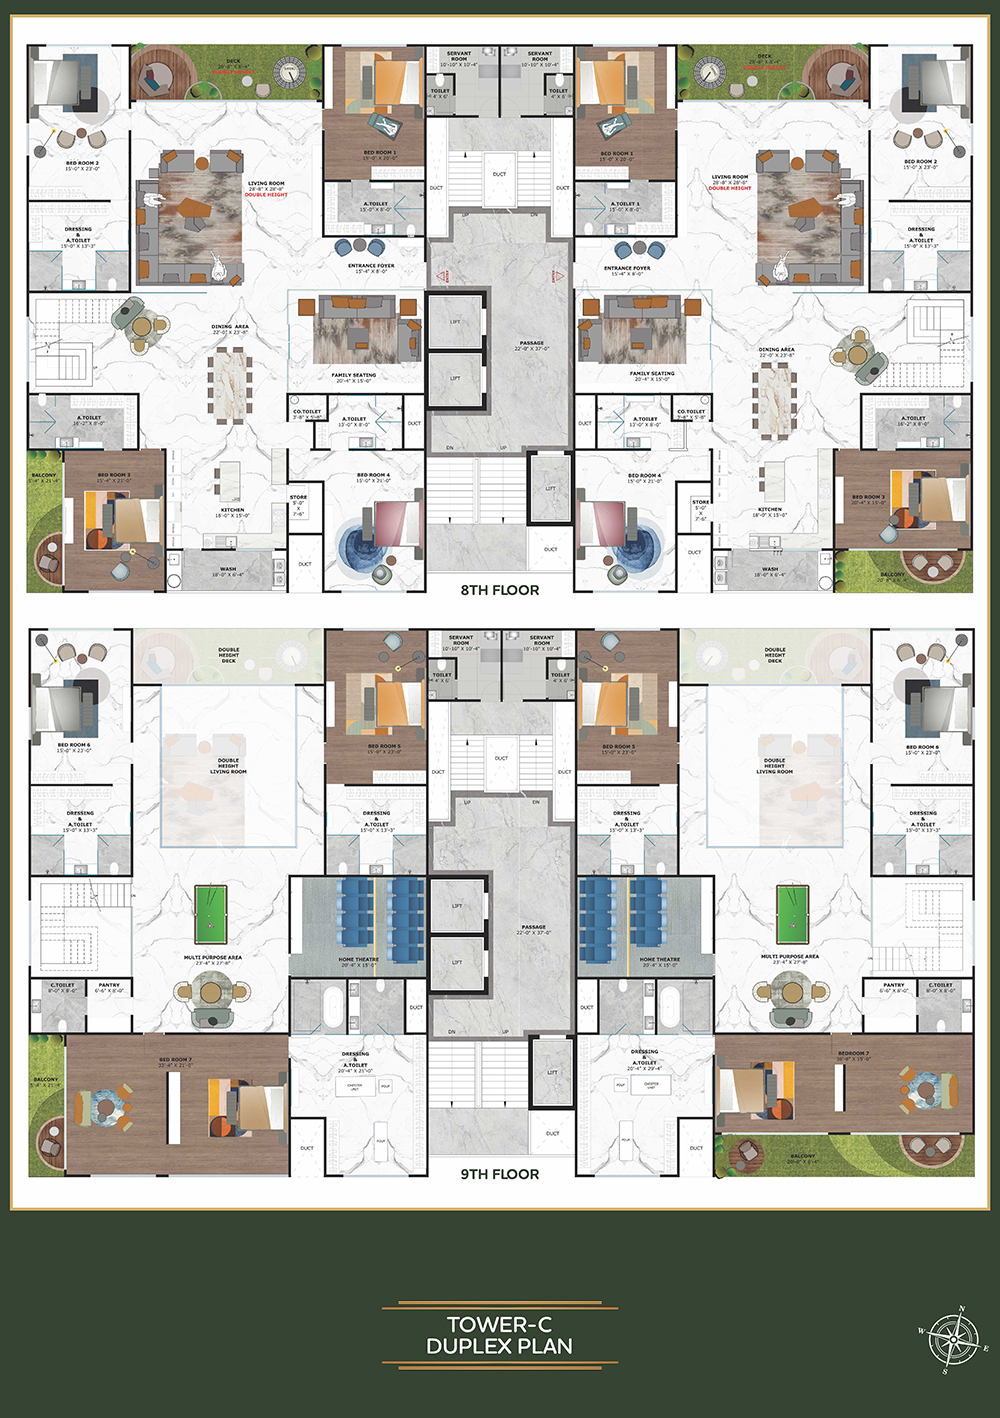 Tower C - Duplex Plan